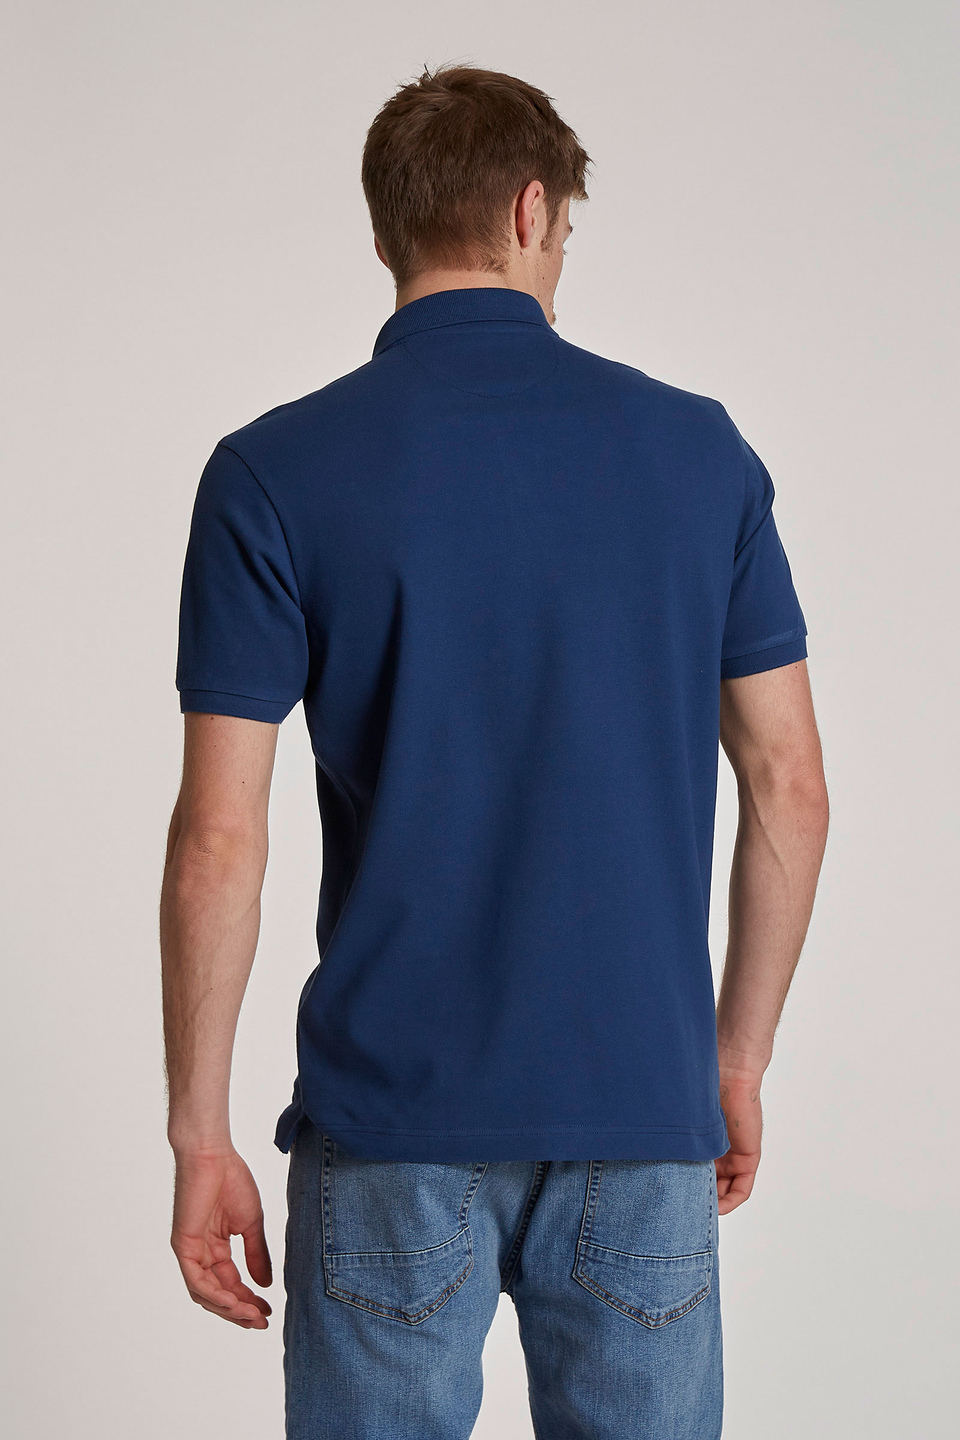 Herren-Poloshirt mit kurzen Ärmeln im regular fit | La Martina - Official Online Shop